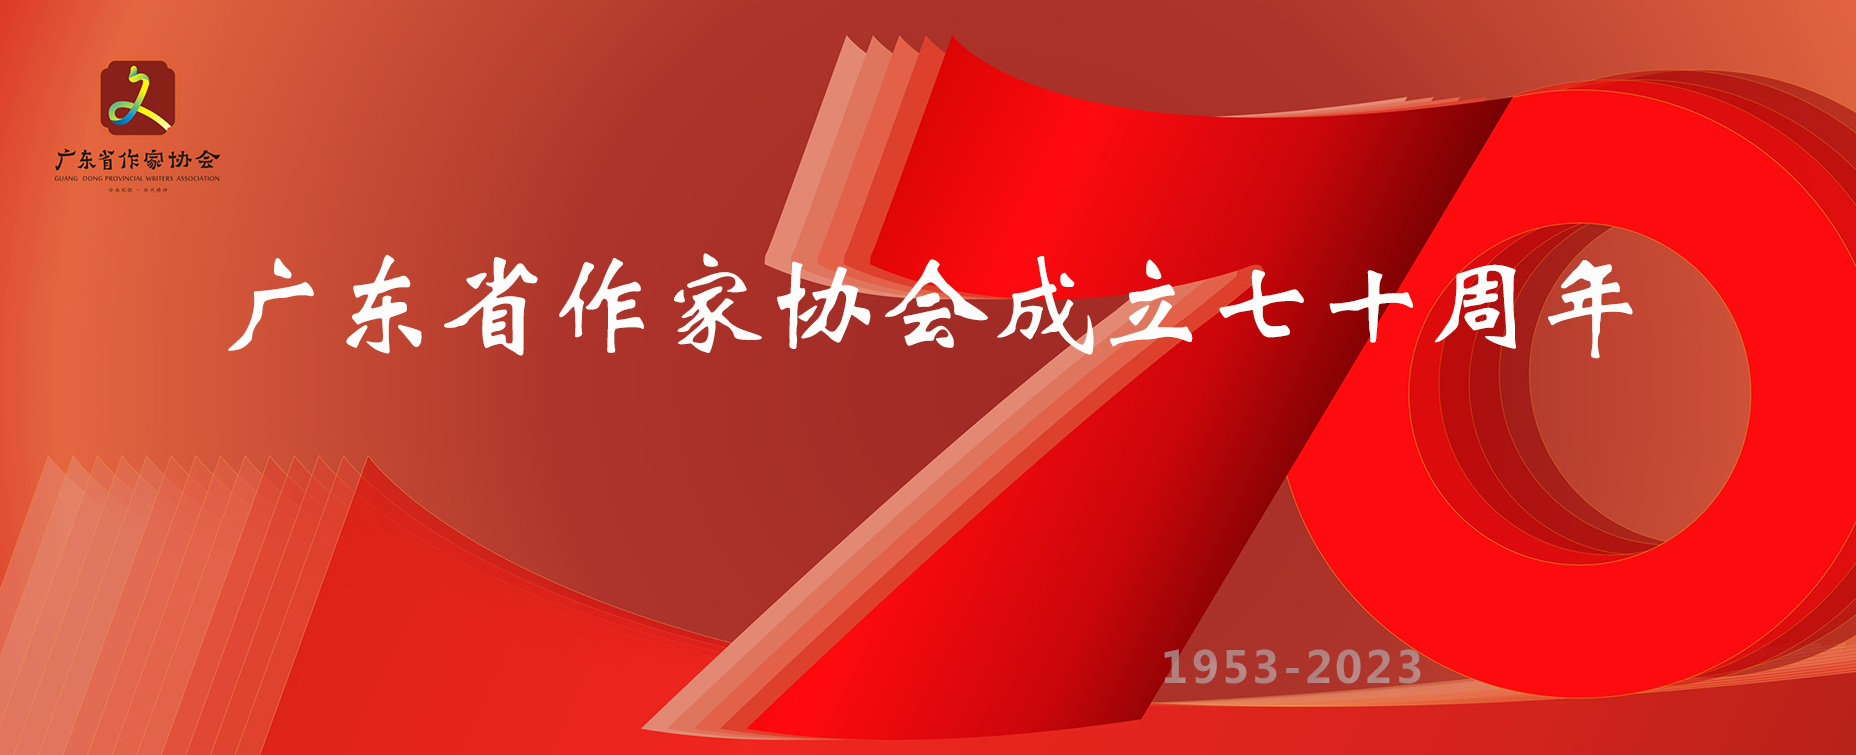 致广东省作家协会成立70周年的贺信、贺词（五）